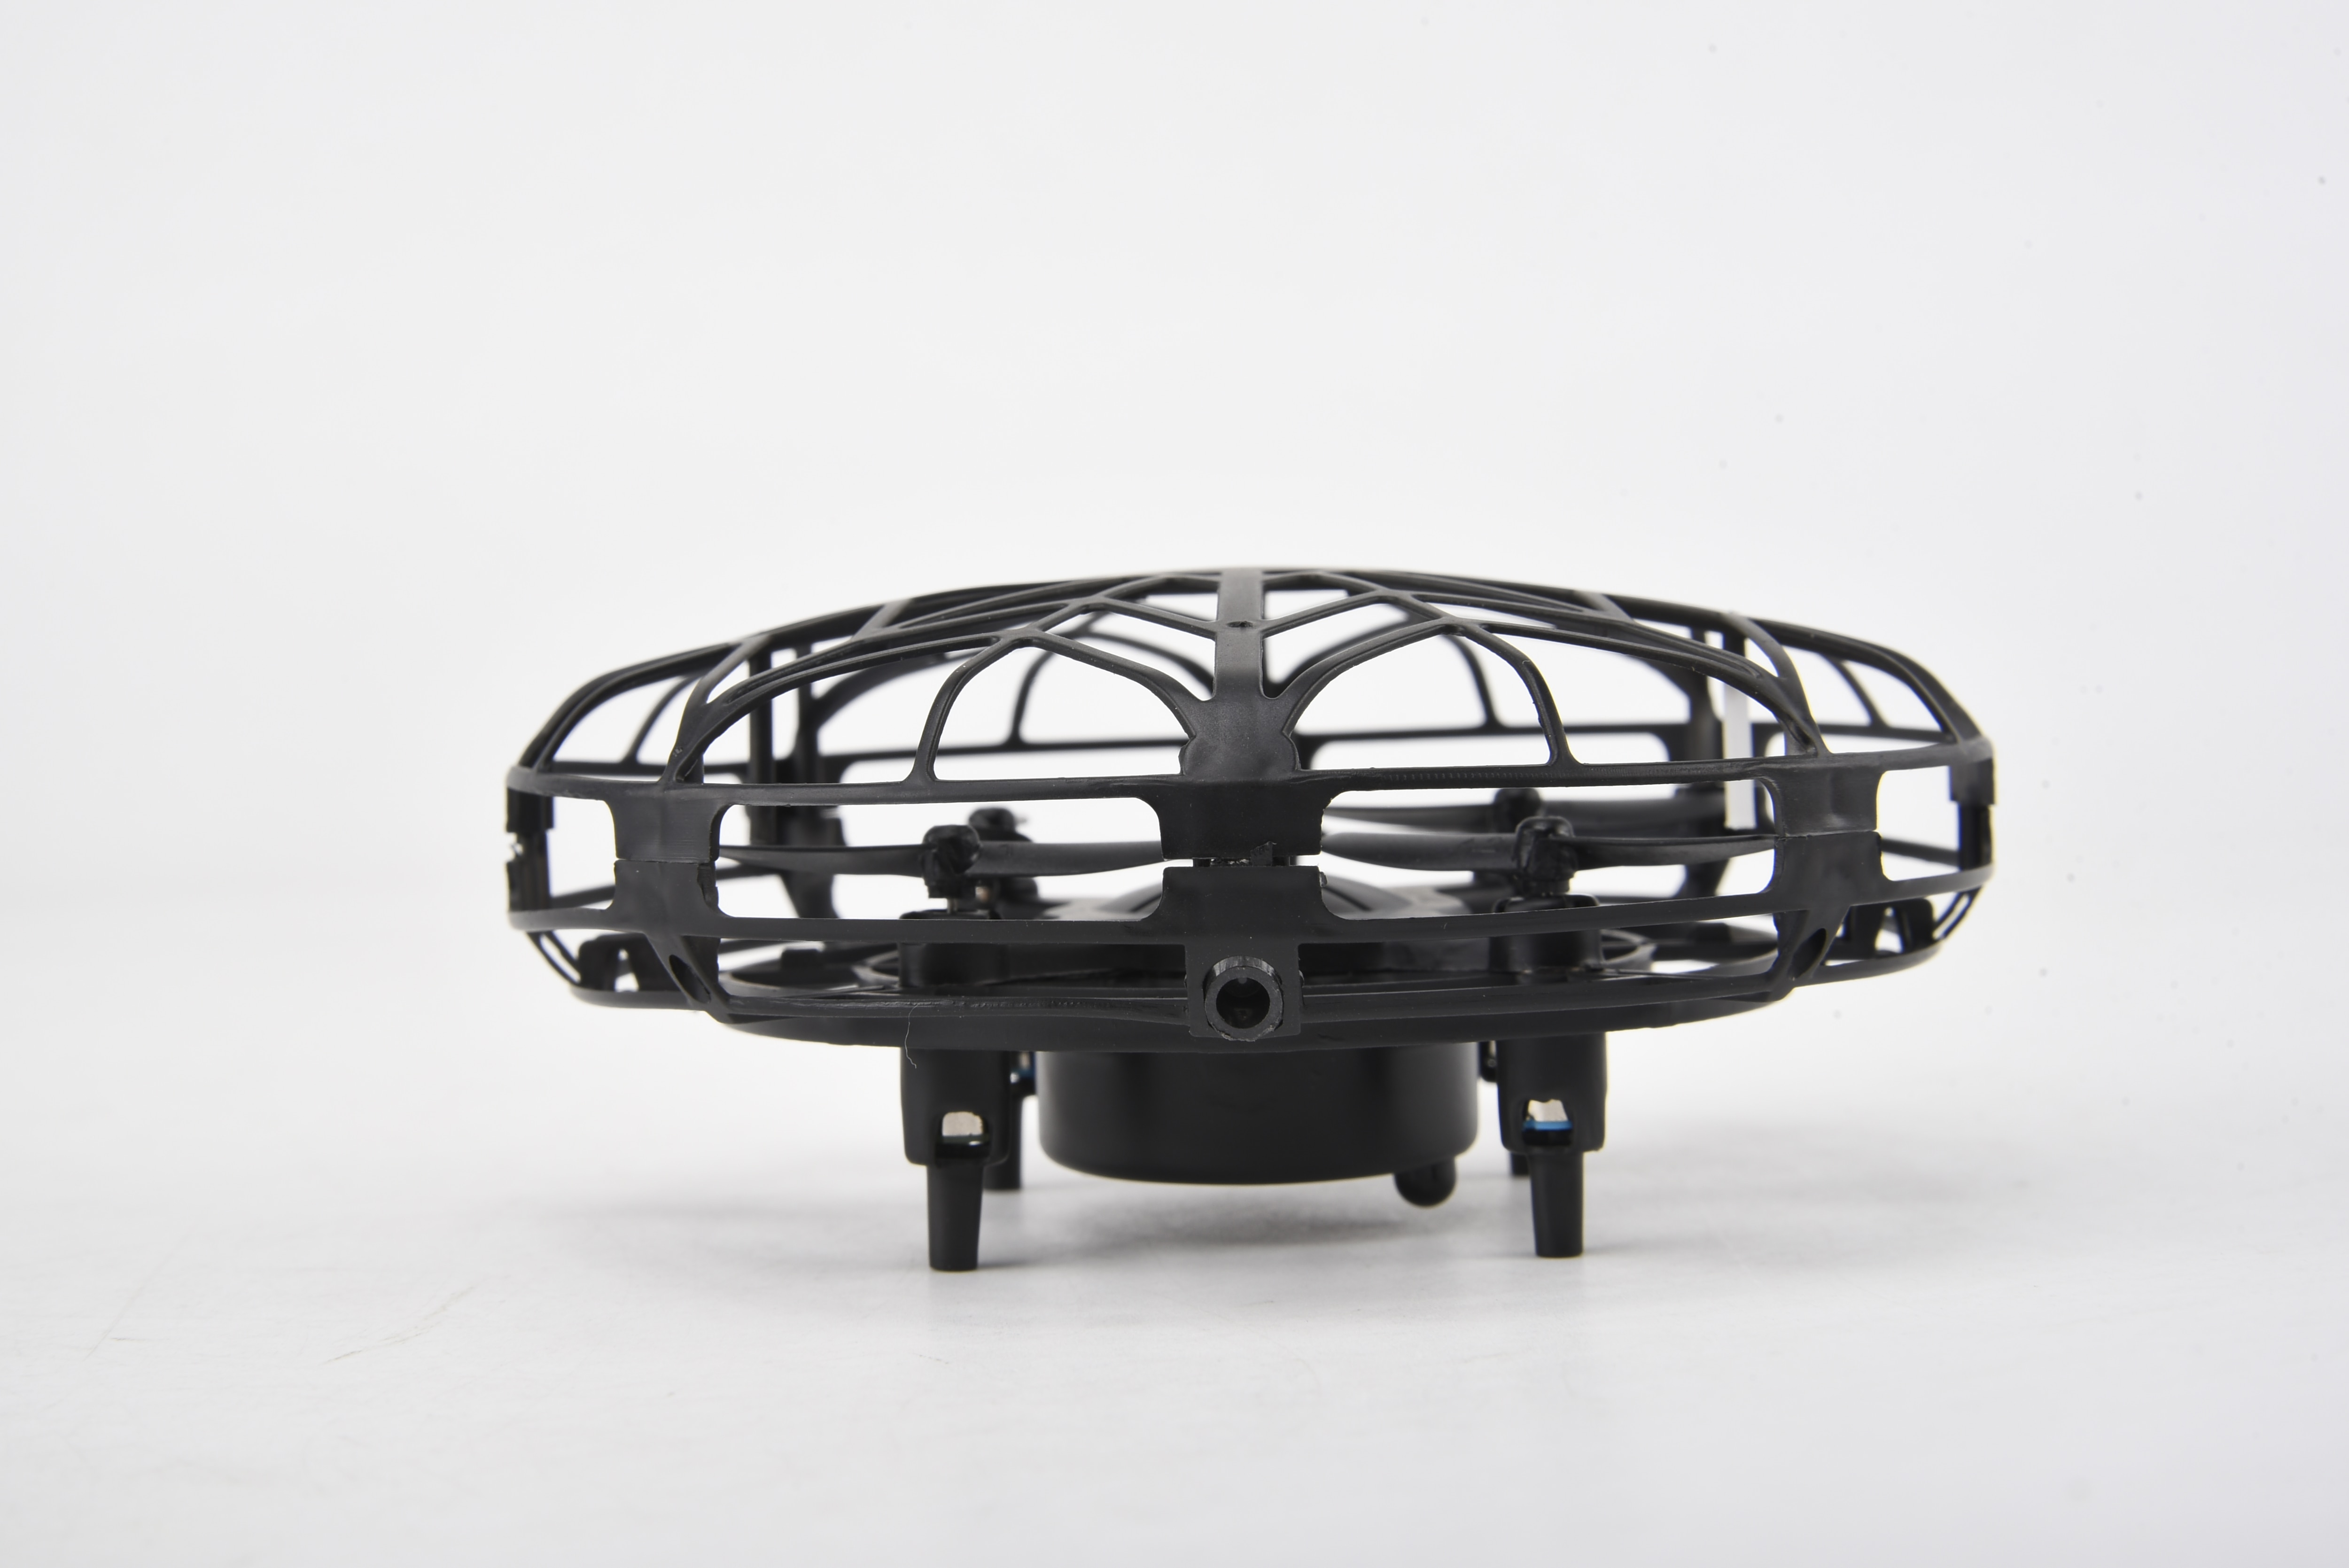 Smart Drone UFO Black